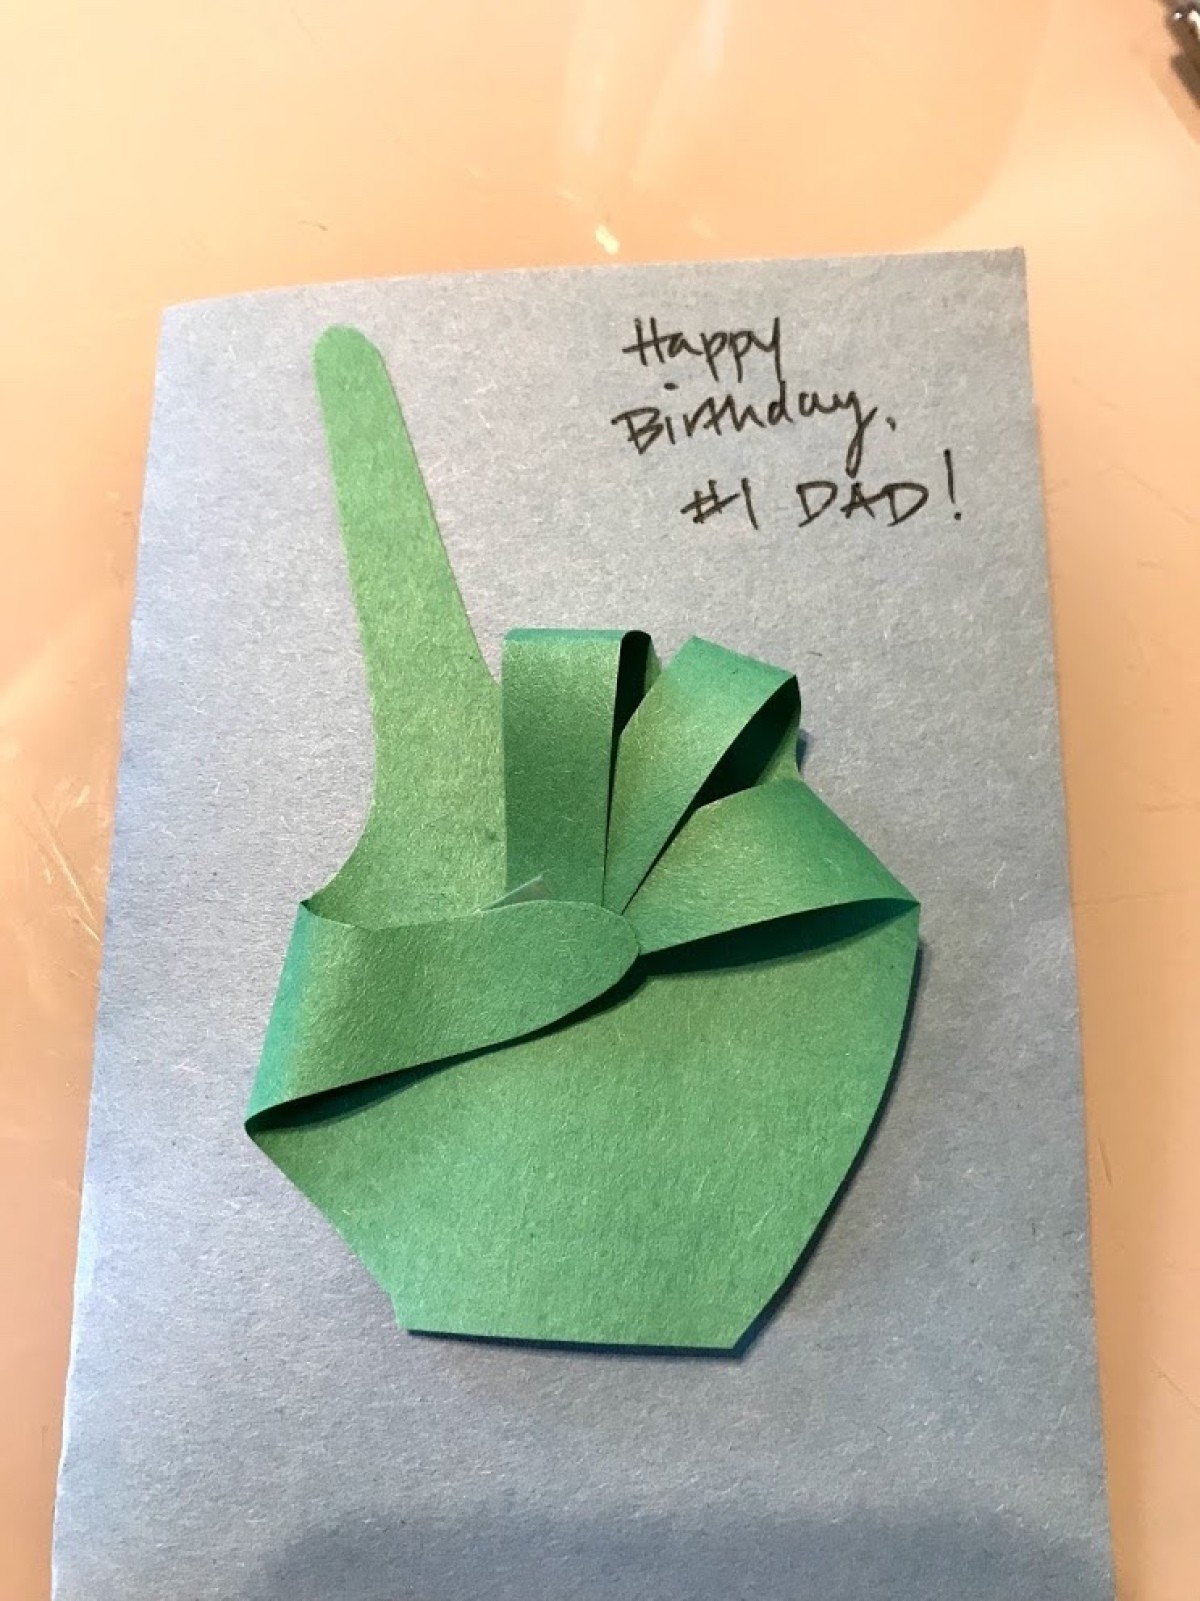 Making a #1 Dad Birthday Card | ThriftyFun